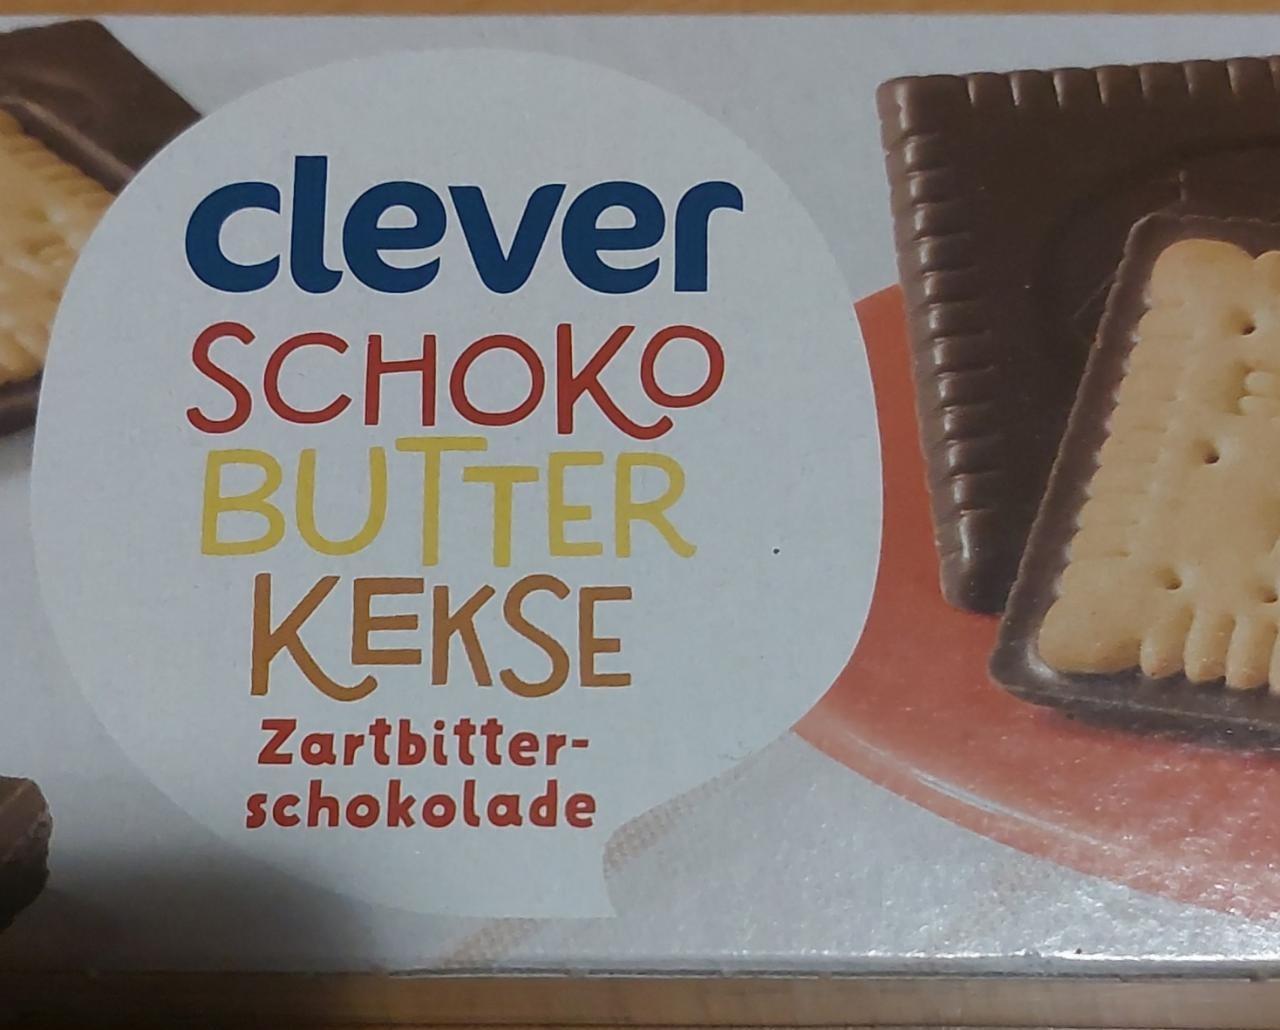 Fotografie - Schoko Butter Kekse Zartbitter-schokolade Clever